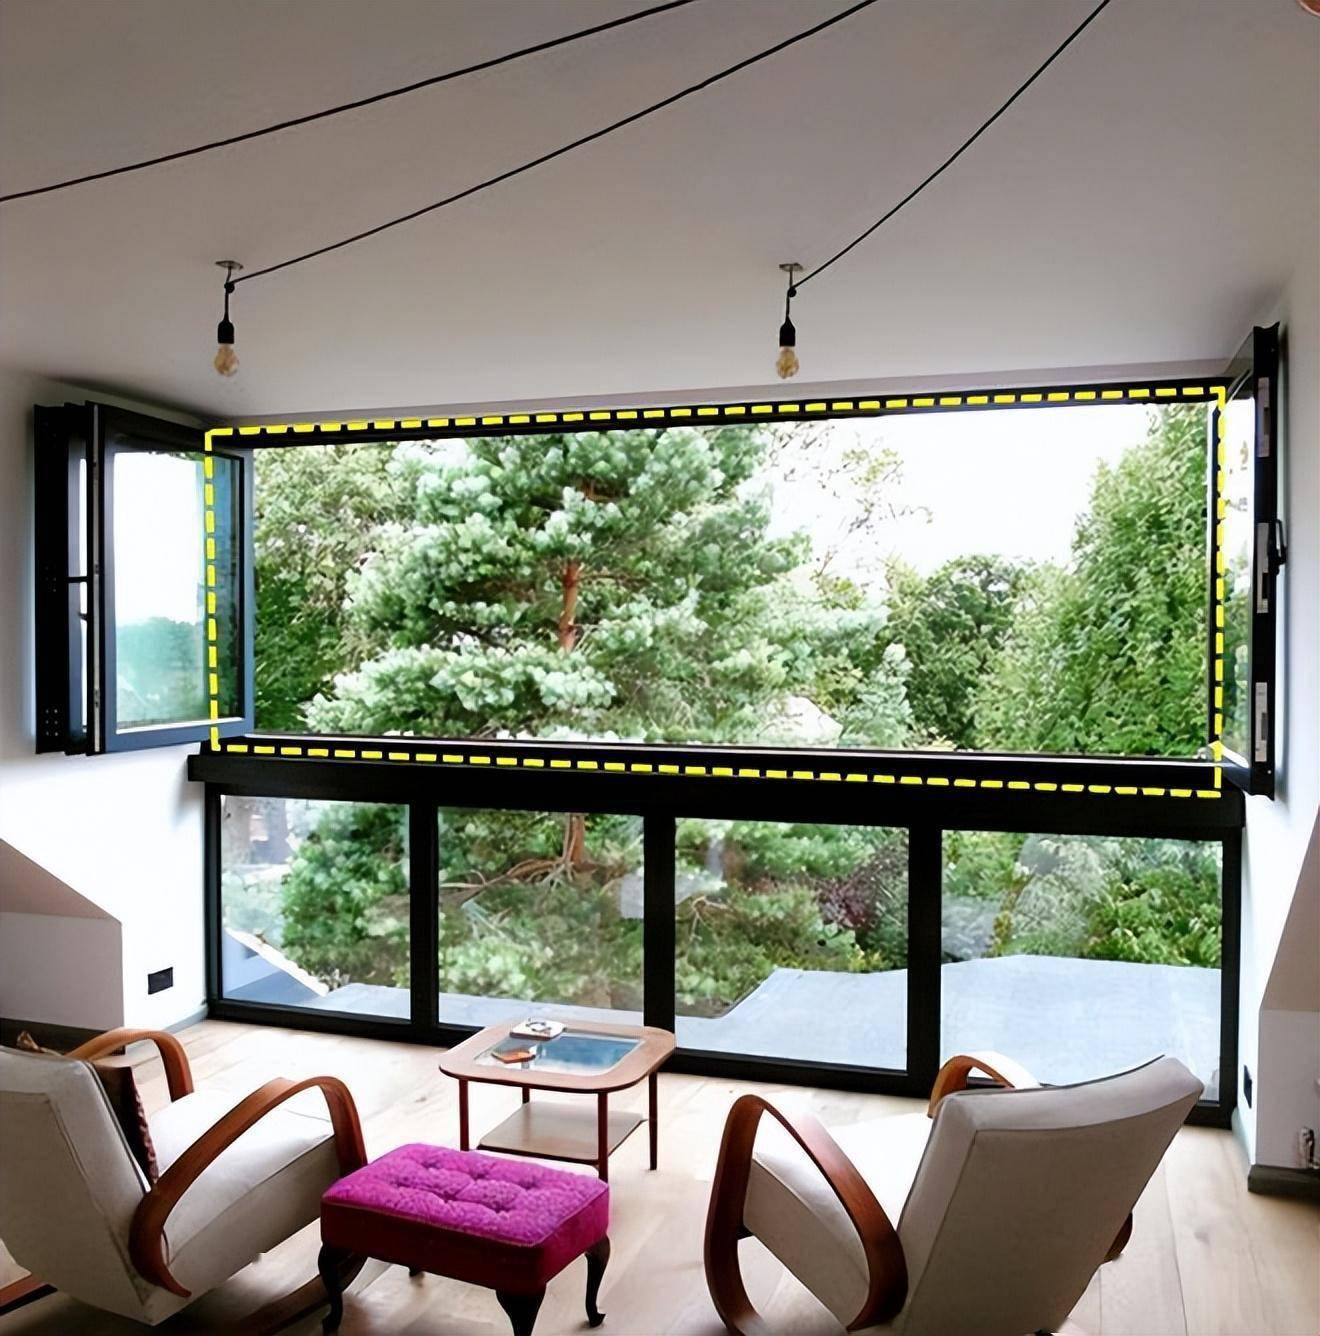 折叠窗封阳台法是的,阳台若是遇到一个好的设计,封起来的更保暖好